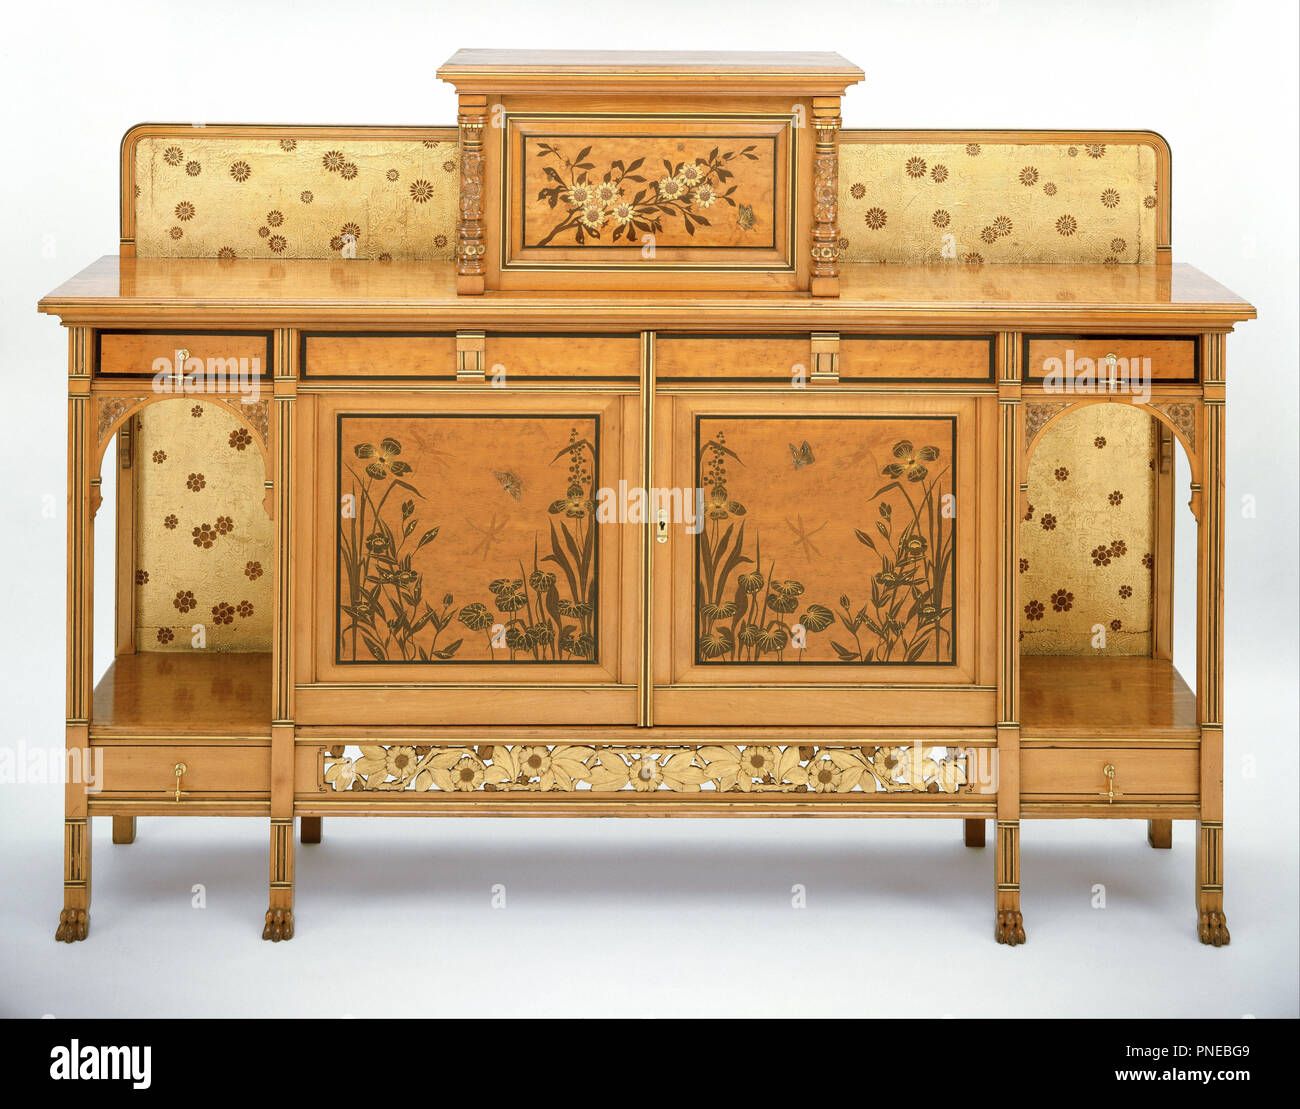 Cabinet Date Period Ca 1880 Furniture Case Furniture And